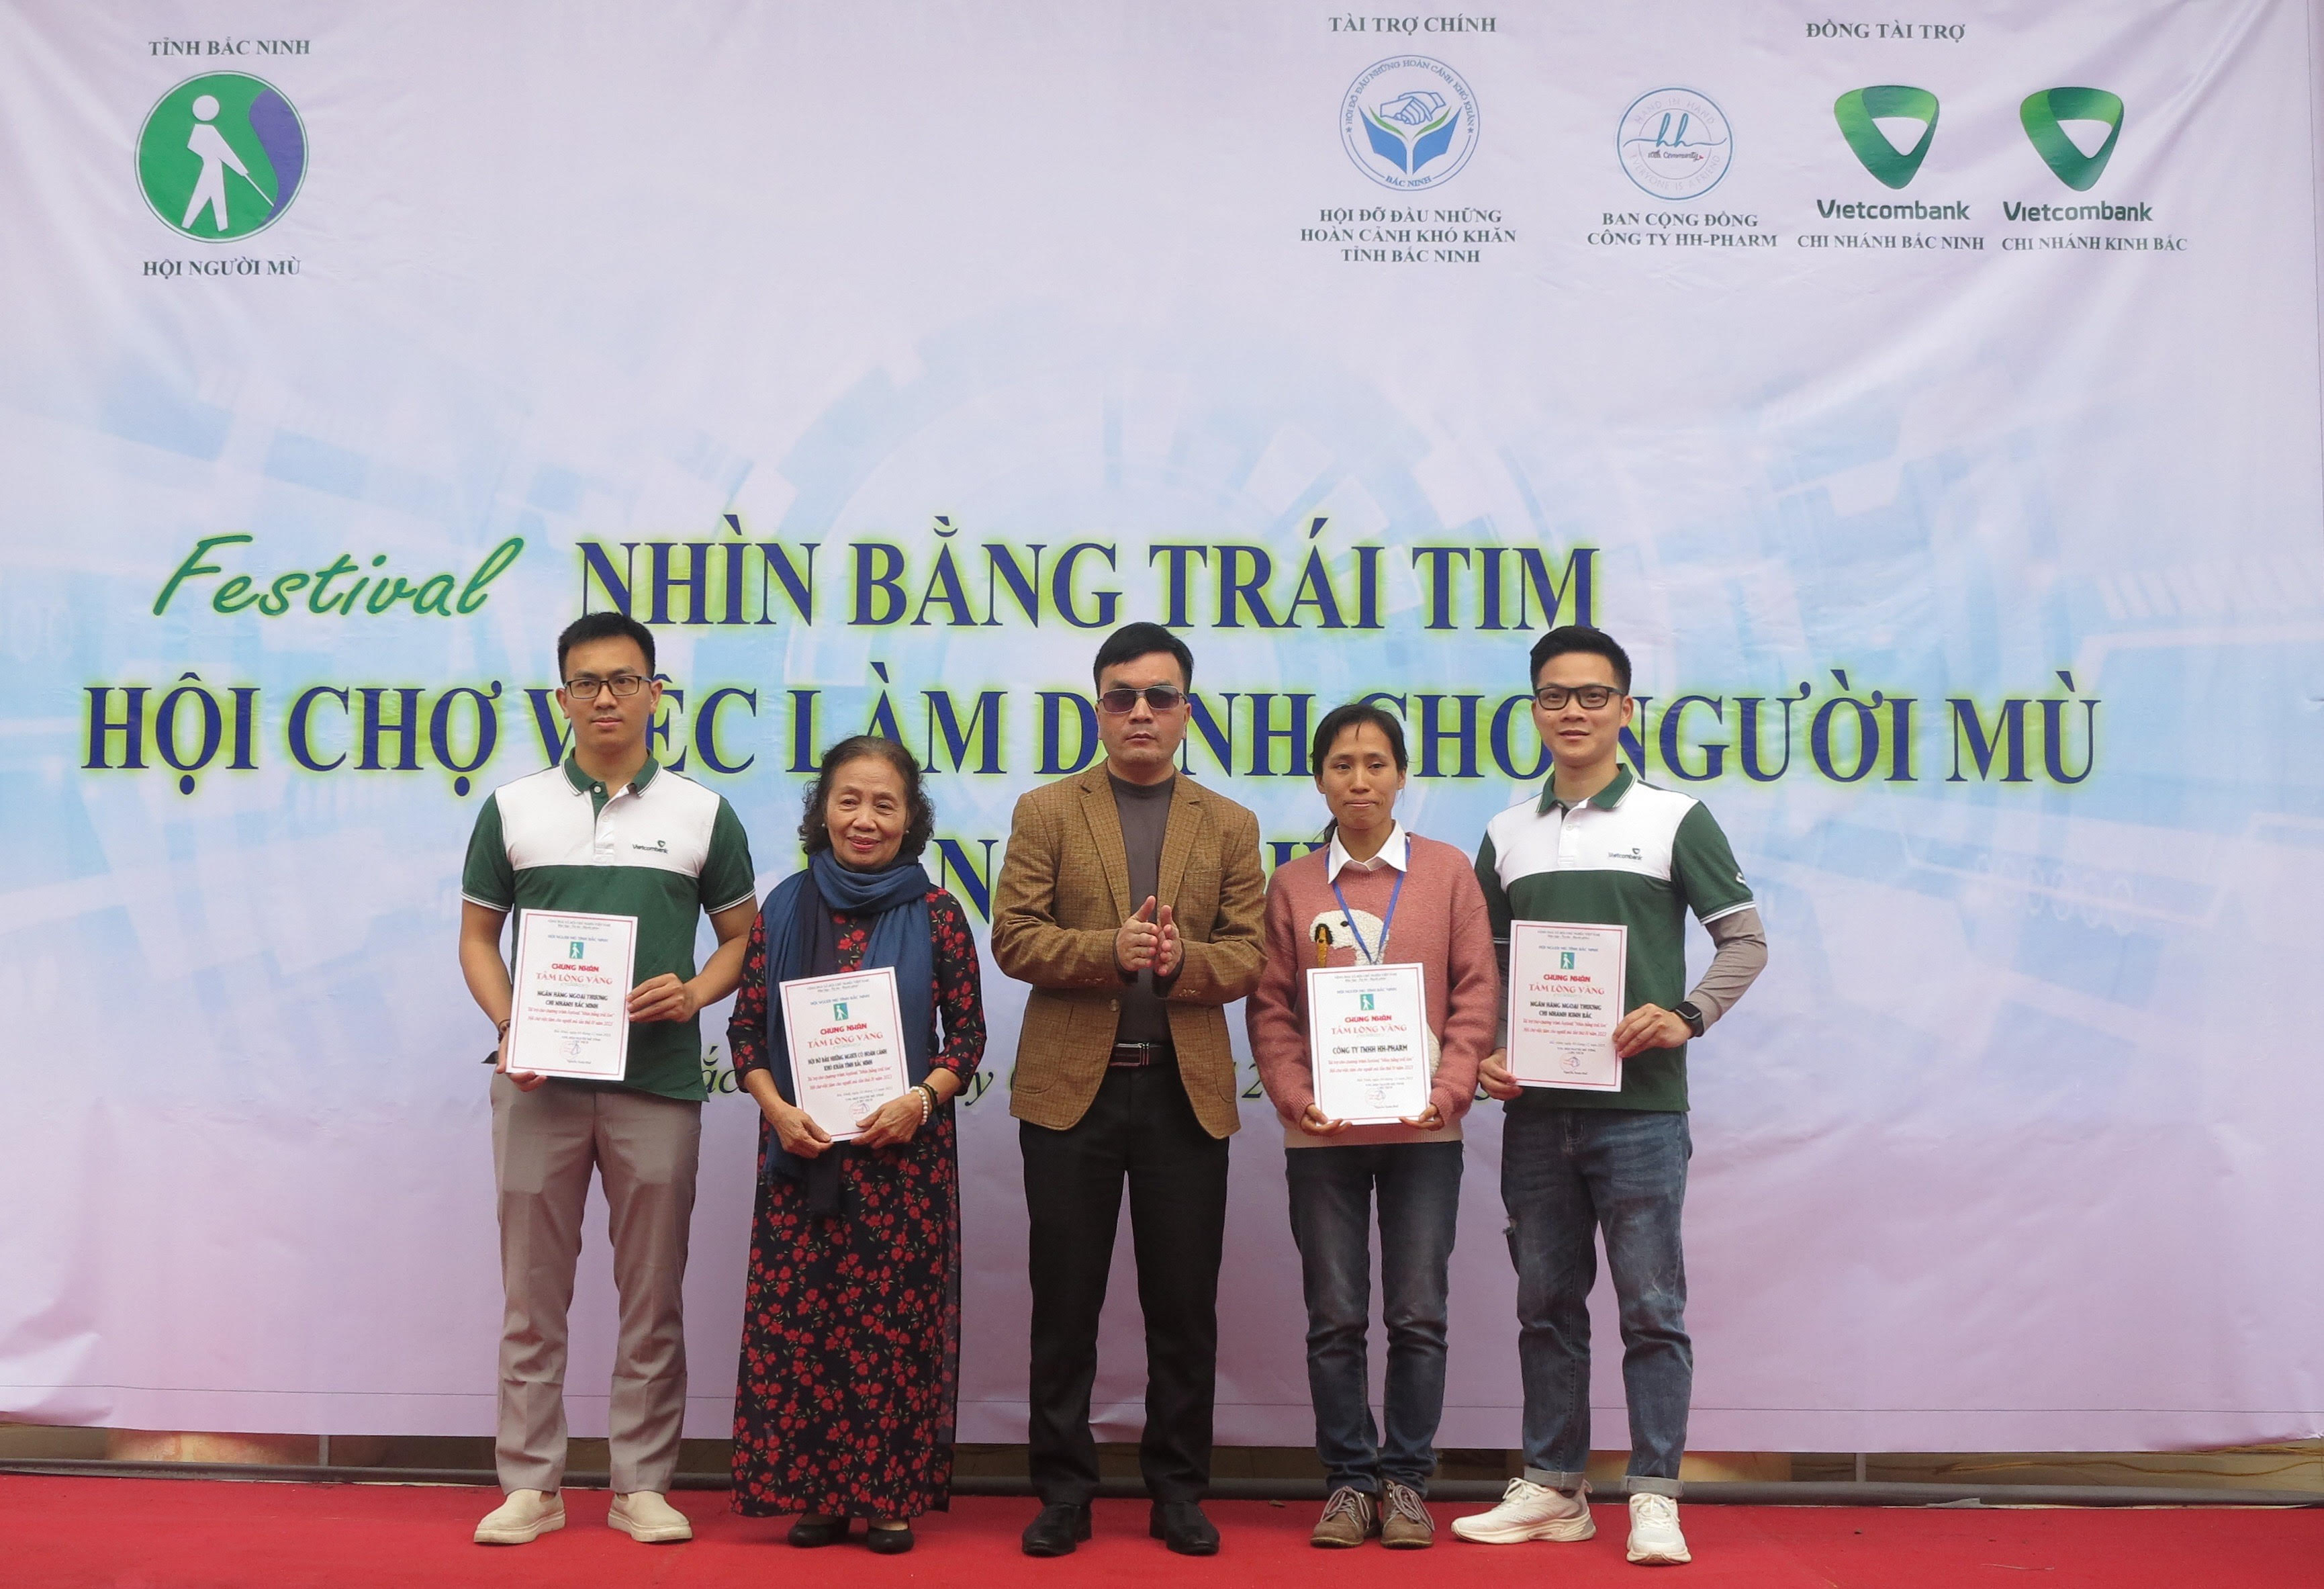 Tỉnh hội Bắc Ninh tổ chức Festival “Nhìn bằng trái tim” - Hội chợ việc làm dành cho người mù lần thứ IV